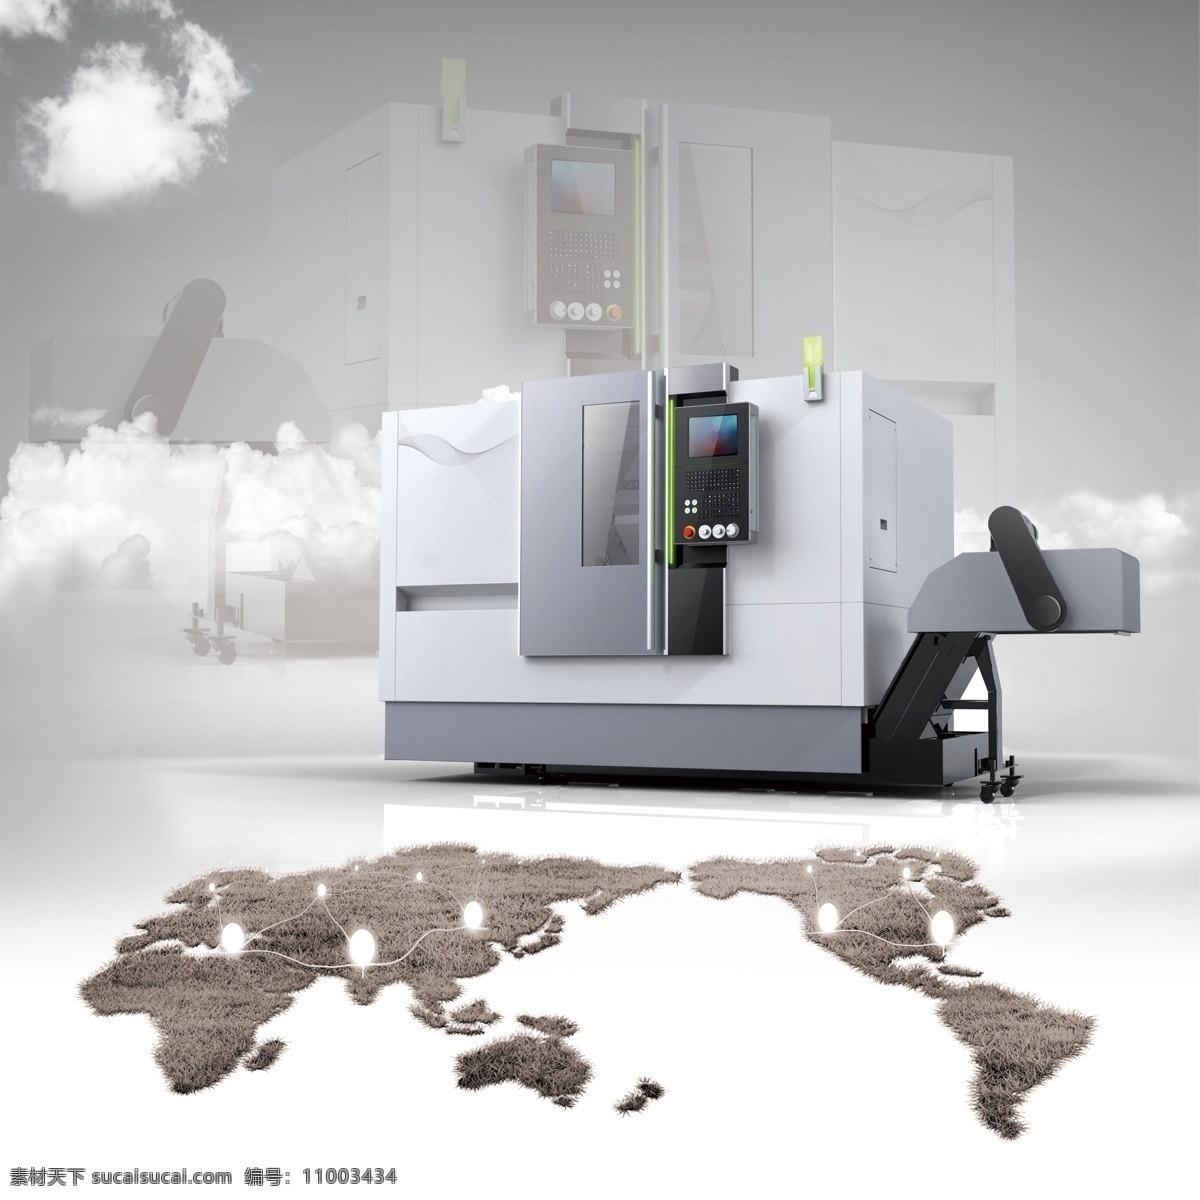 机床 智能机床 现代工厂 工厂 科技 灰色 高清数字机床 现代科技 工业生产